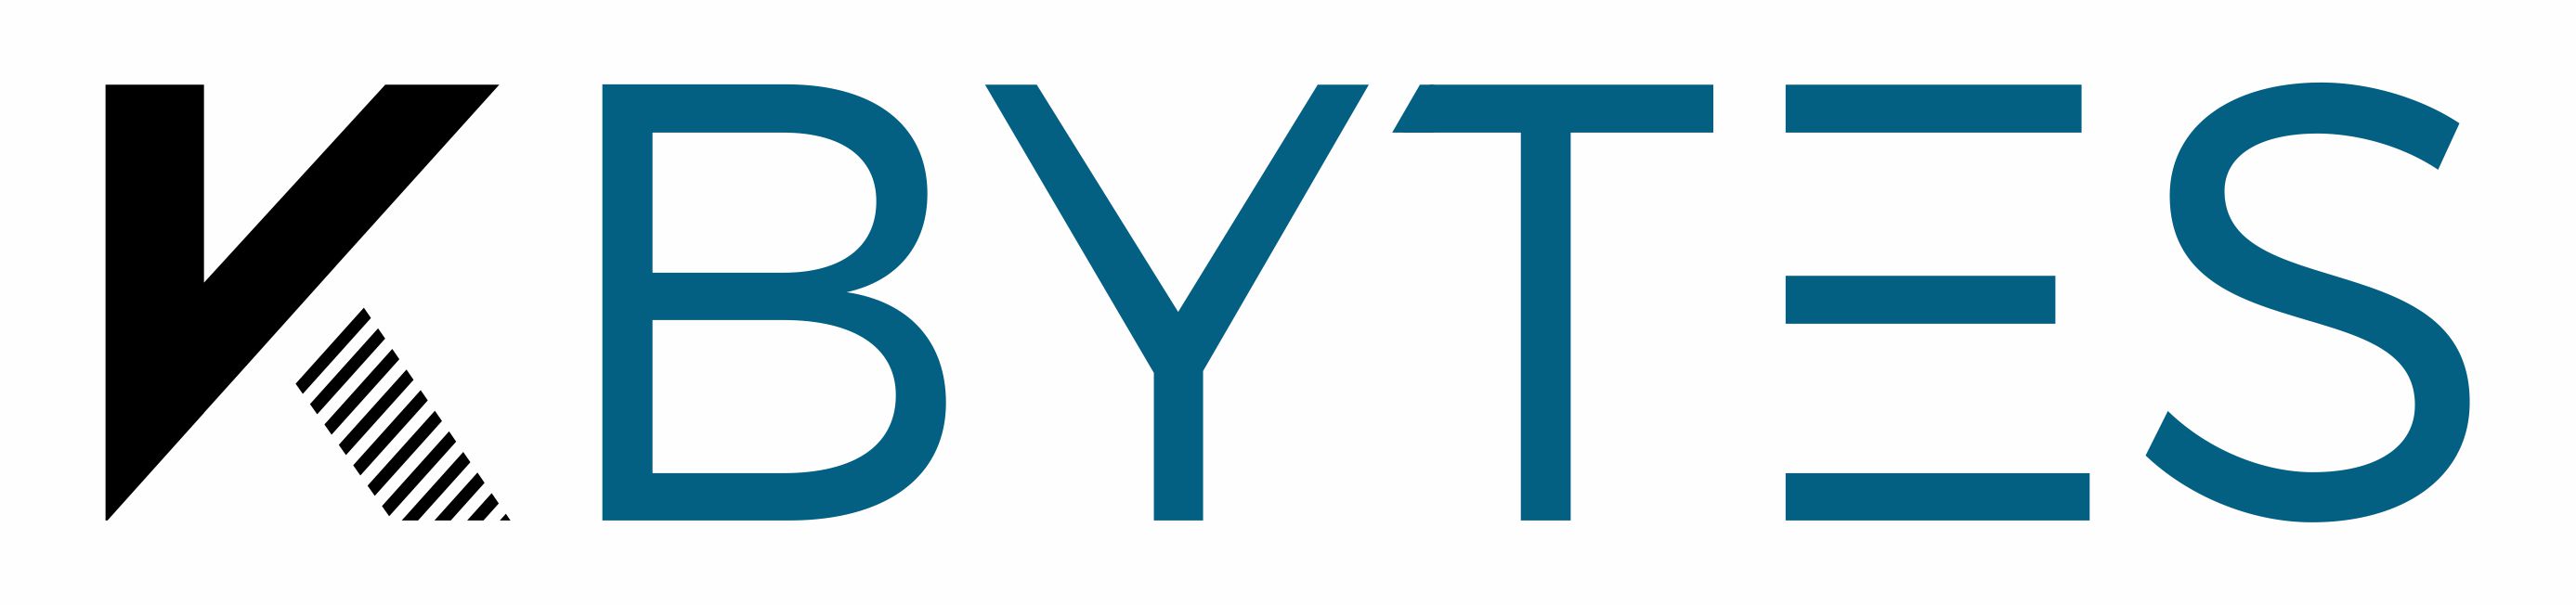 Kbytes Logo